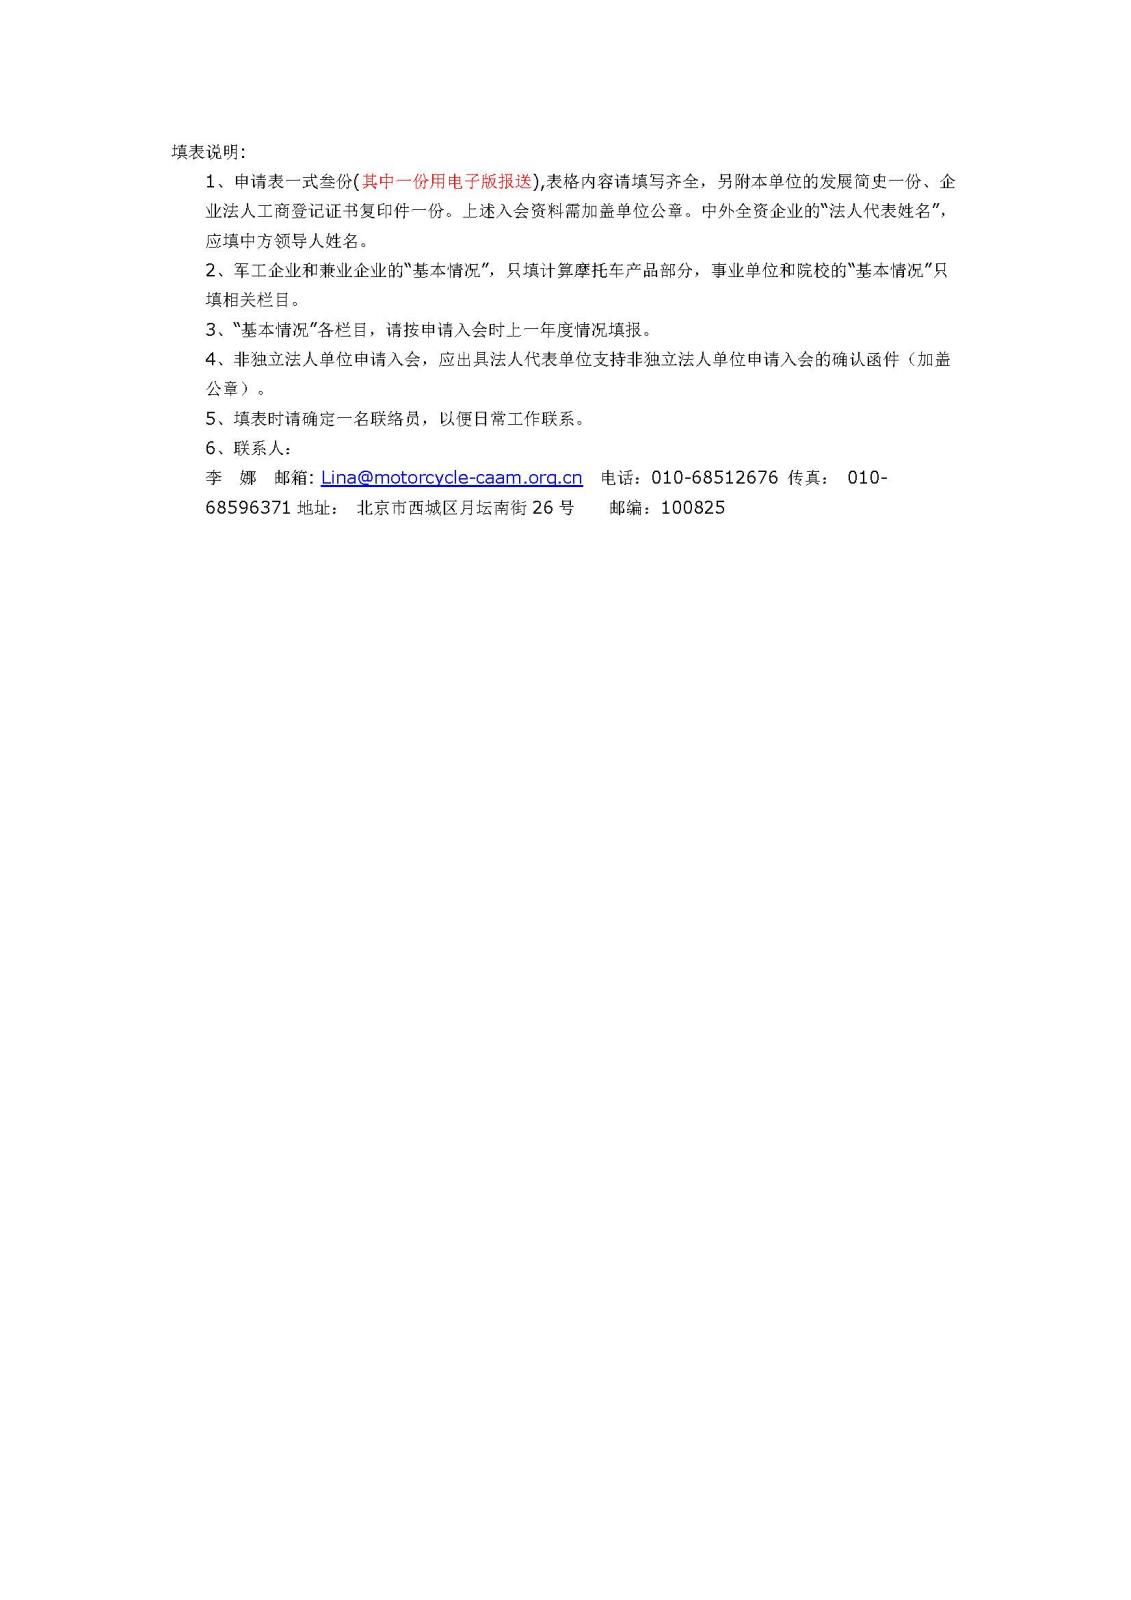 中国摩托车商会入会邀请函_Page_5.jpg